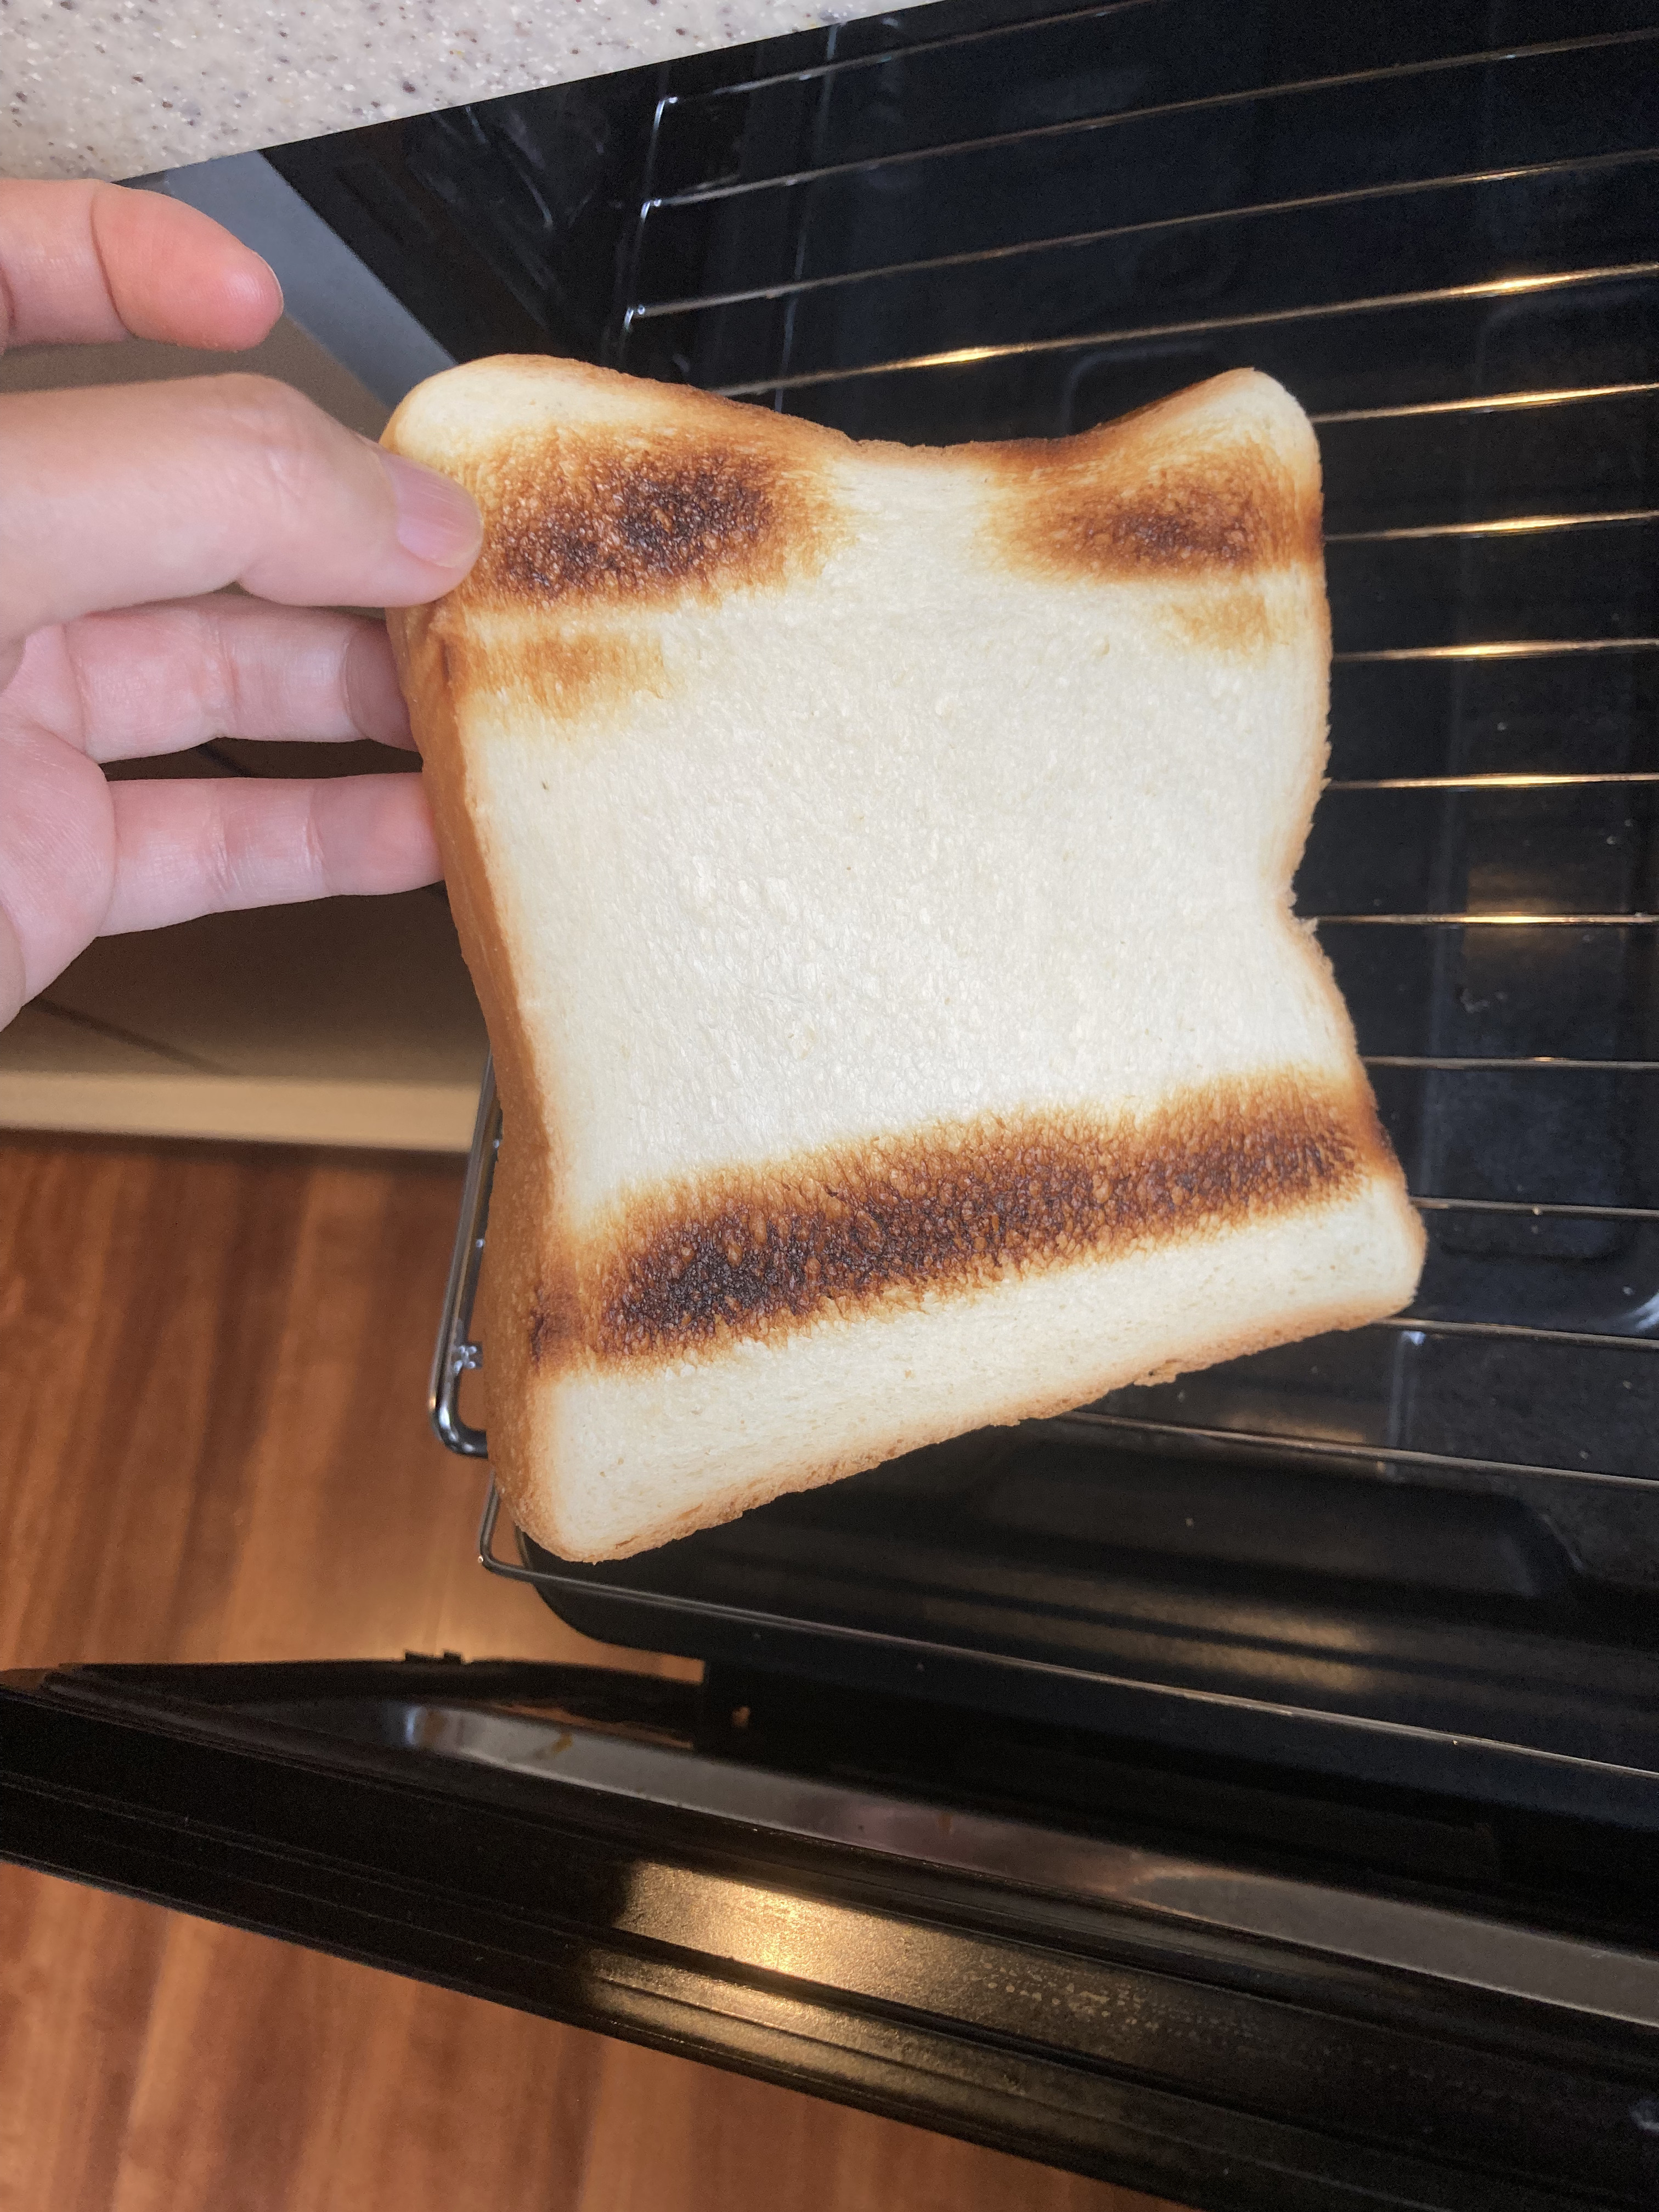 トースターから取り出された片面が焦げたトーストを手が持っている。